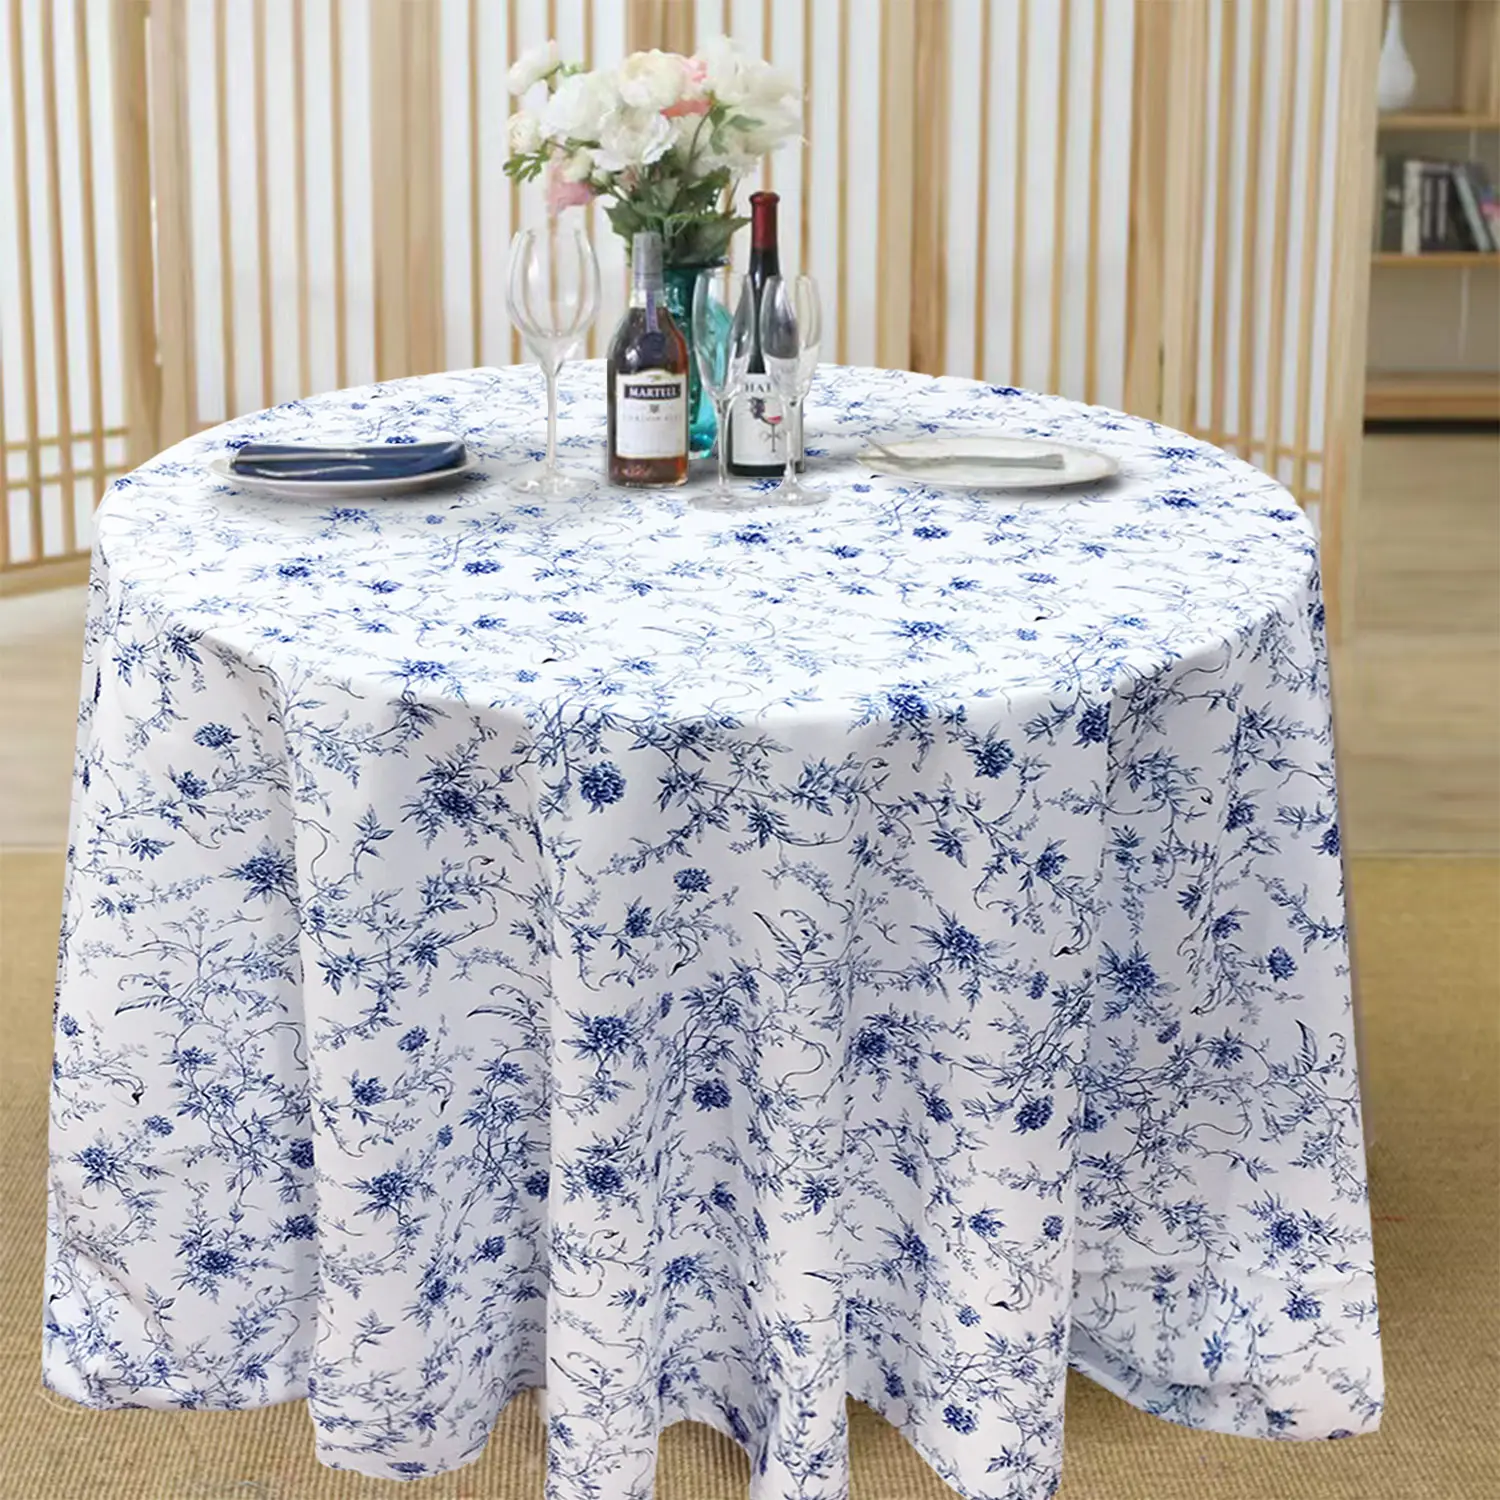 ผ้าปูโต๊ะผ้าฝ้ายโพลีเอสเตอร์58 "R พิมพ์ลายดอกไม้บล็อกสีฟ้าผ้าปูโต๊ะสำหรับงานเลี้ยงวันเกิดสำหรับงานแต่งงานโลโก้ที่กำหนดเอง